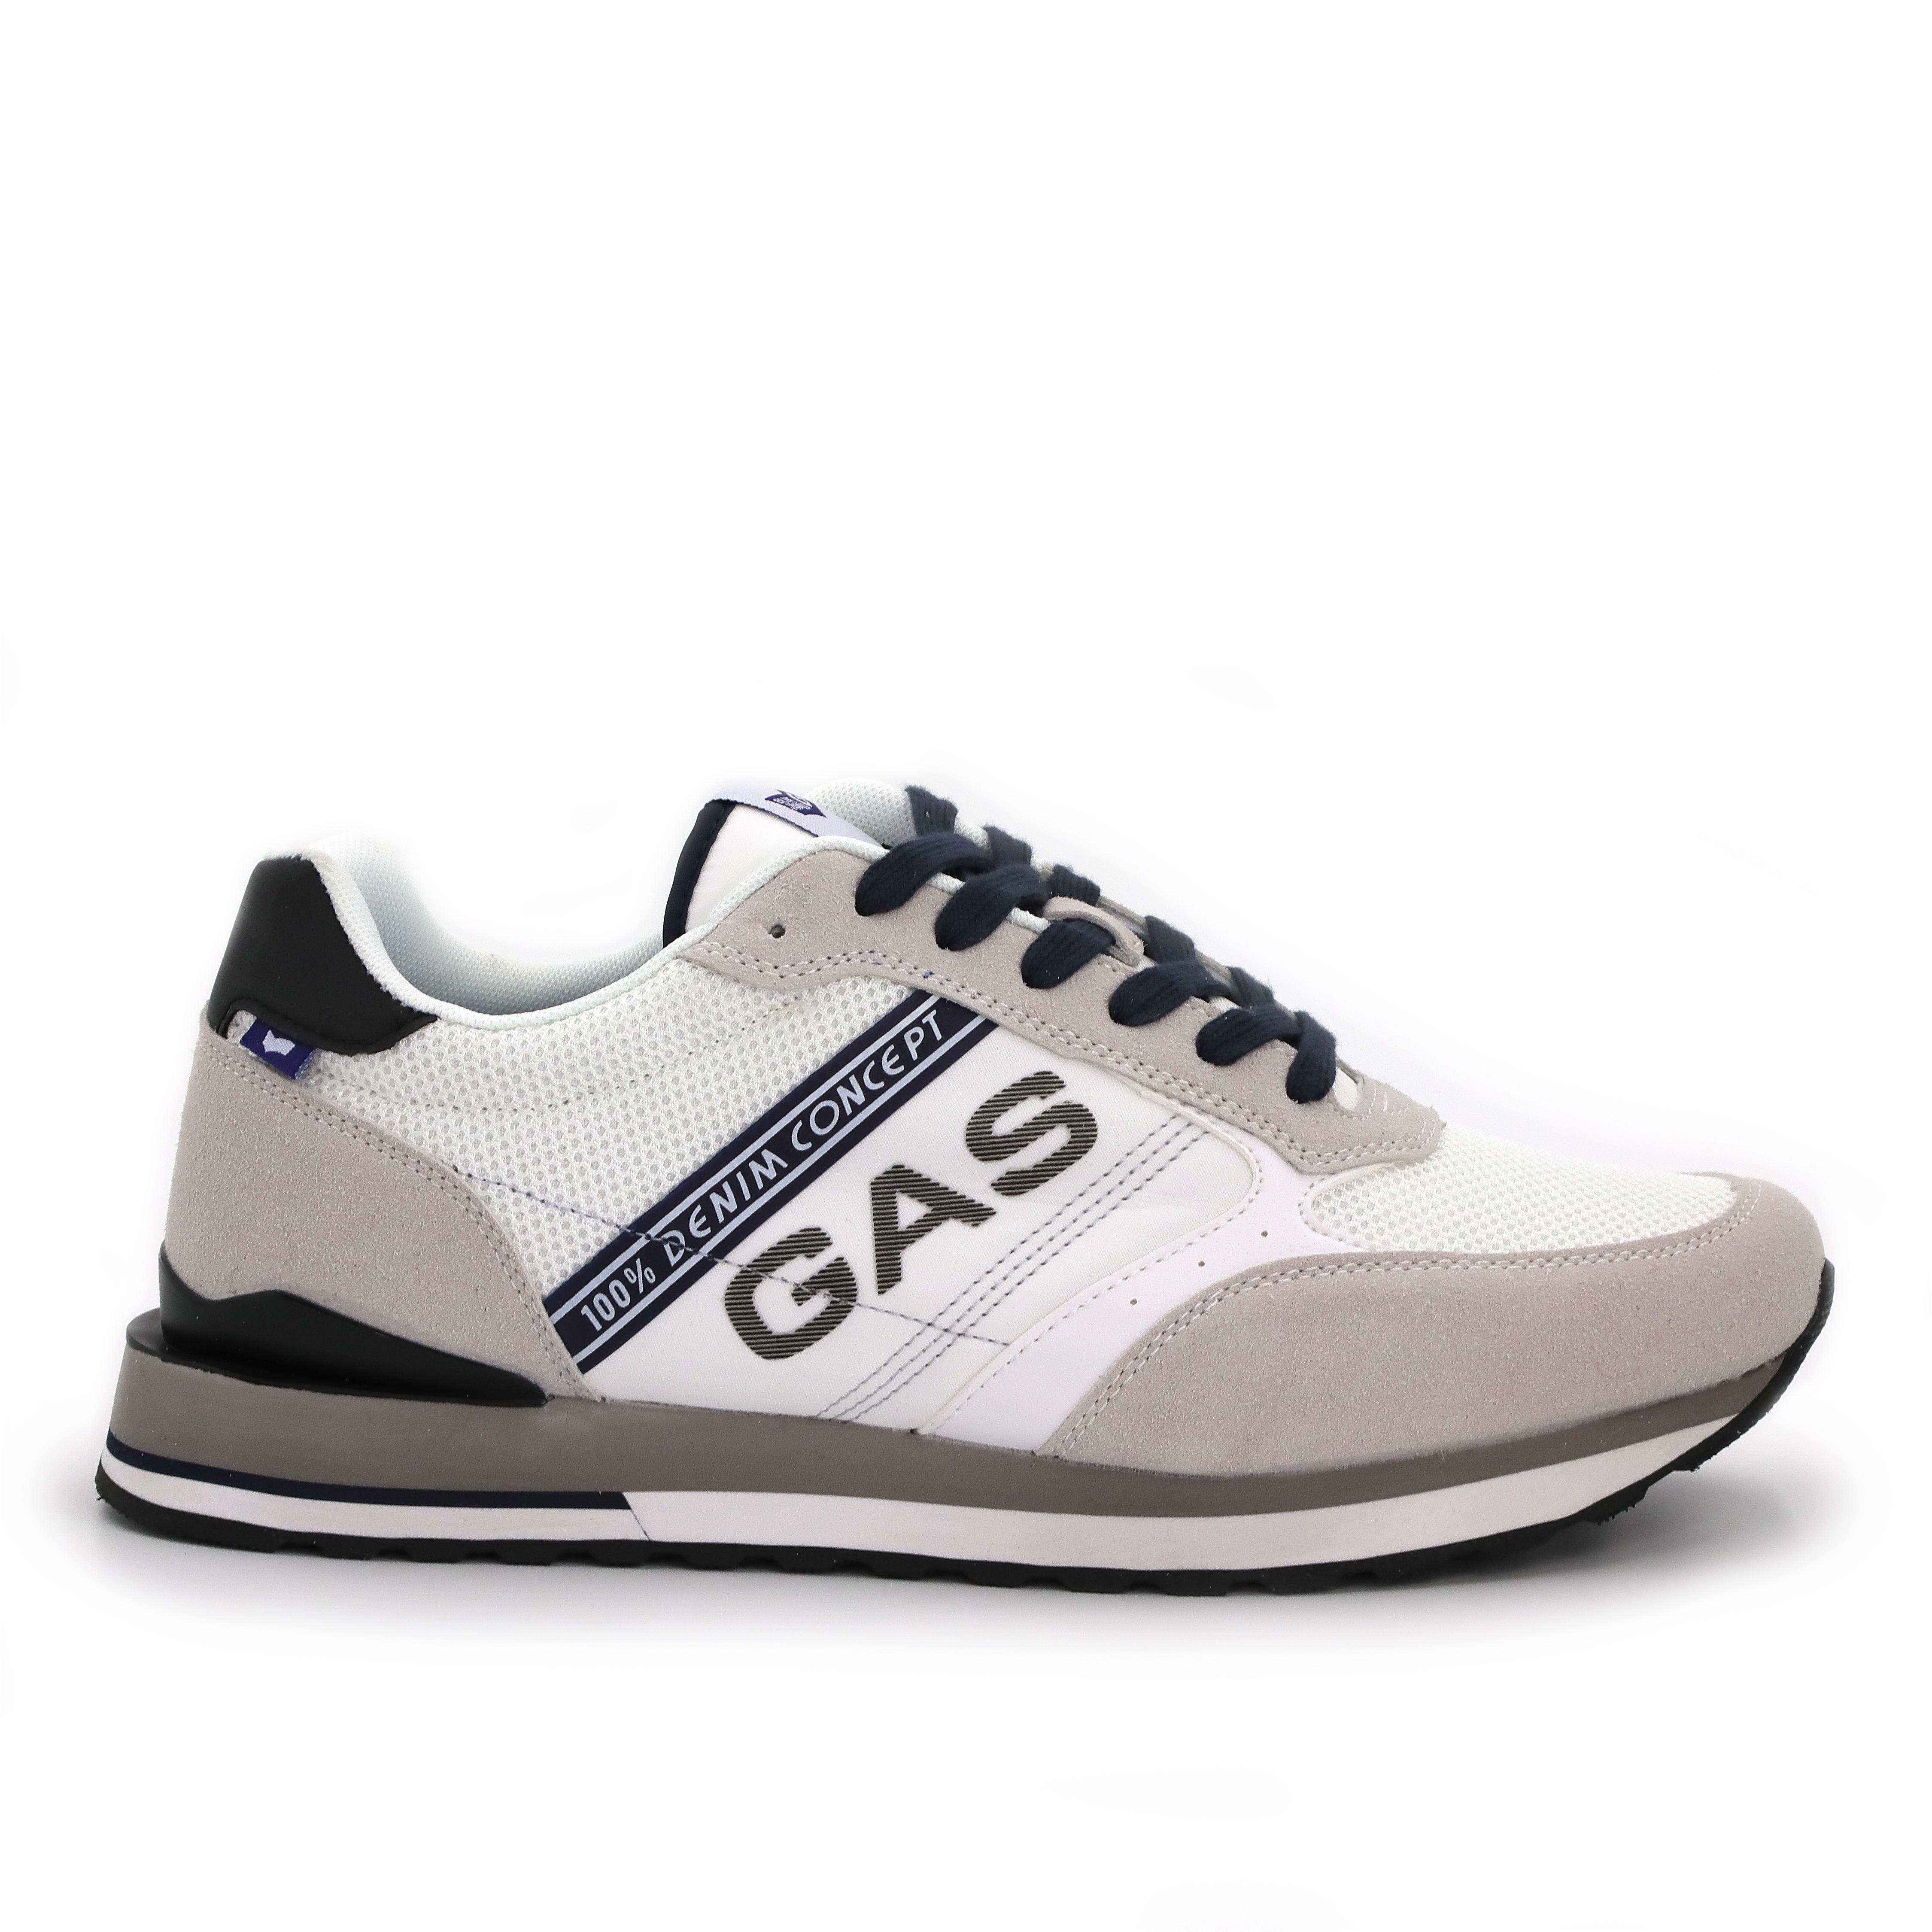 Мужские кроссовки GAS, белые, цвет белый, размер 46 - фото 2